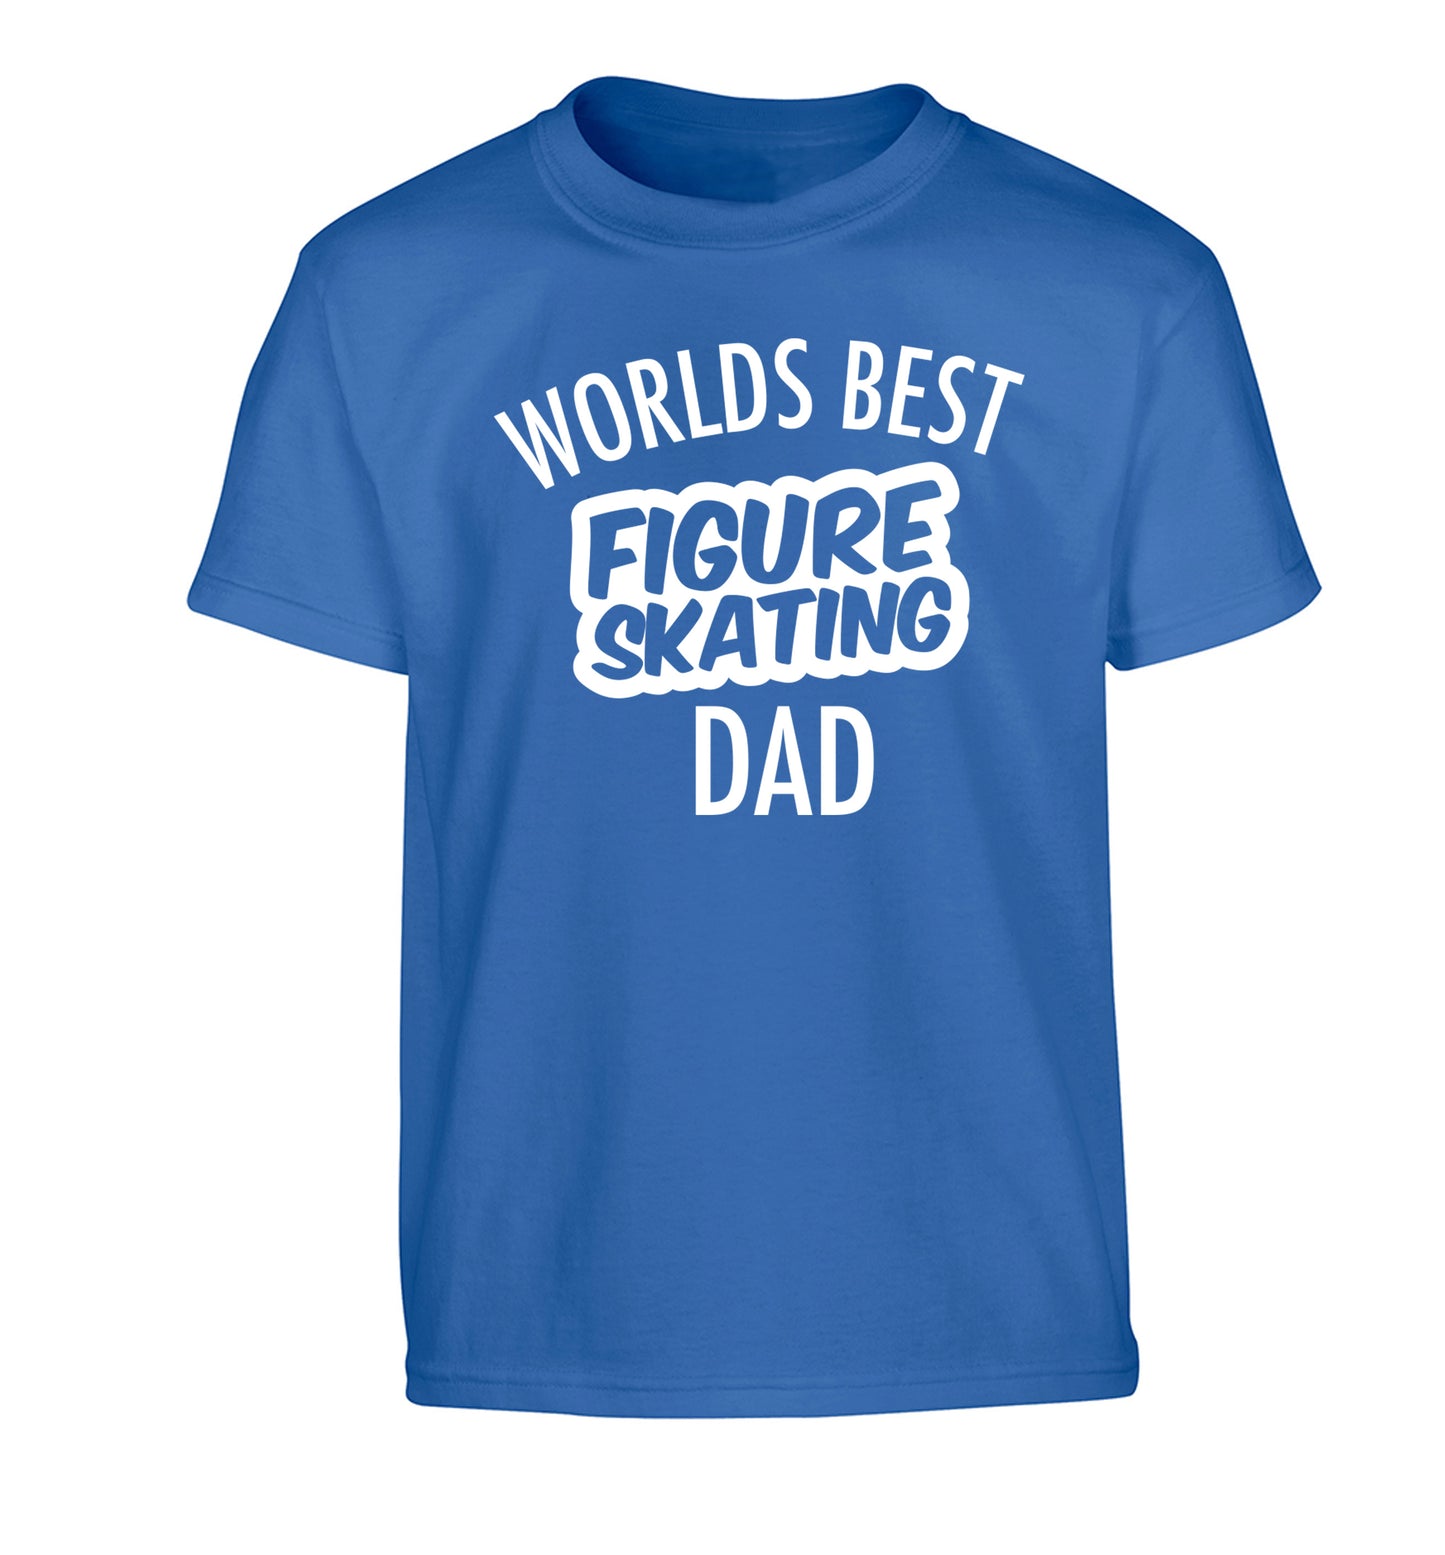 Worlds best figure skating dad Children's blue Tshirt 12-14 Years